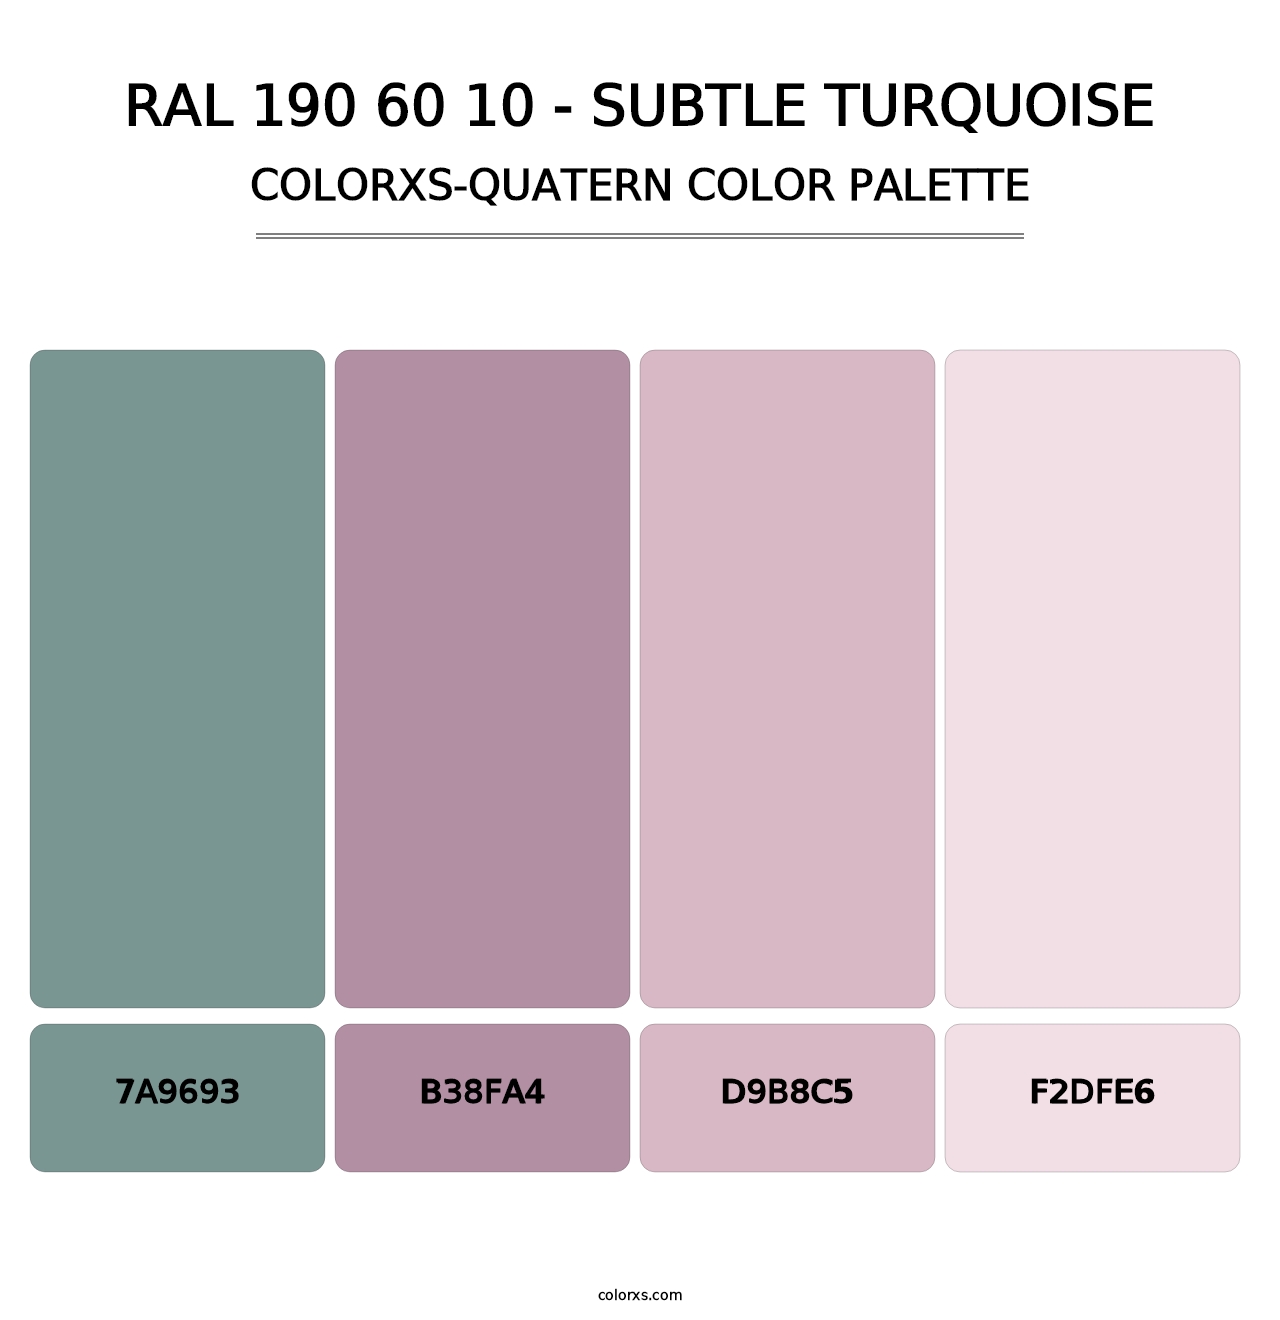 RAL 190 60 10 - Subtle Turquoise - Colorxs Quatern Palette